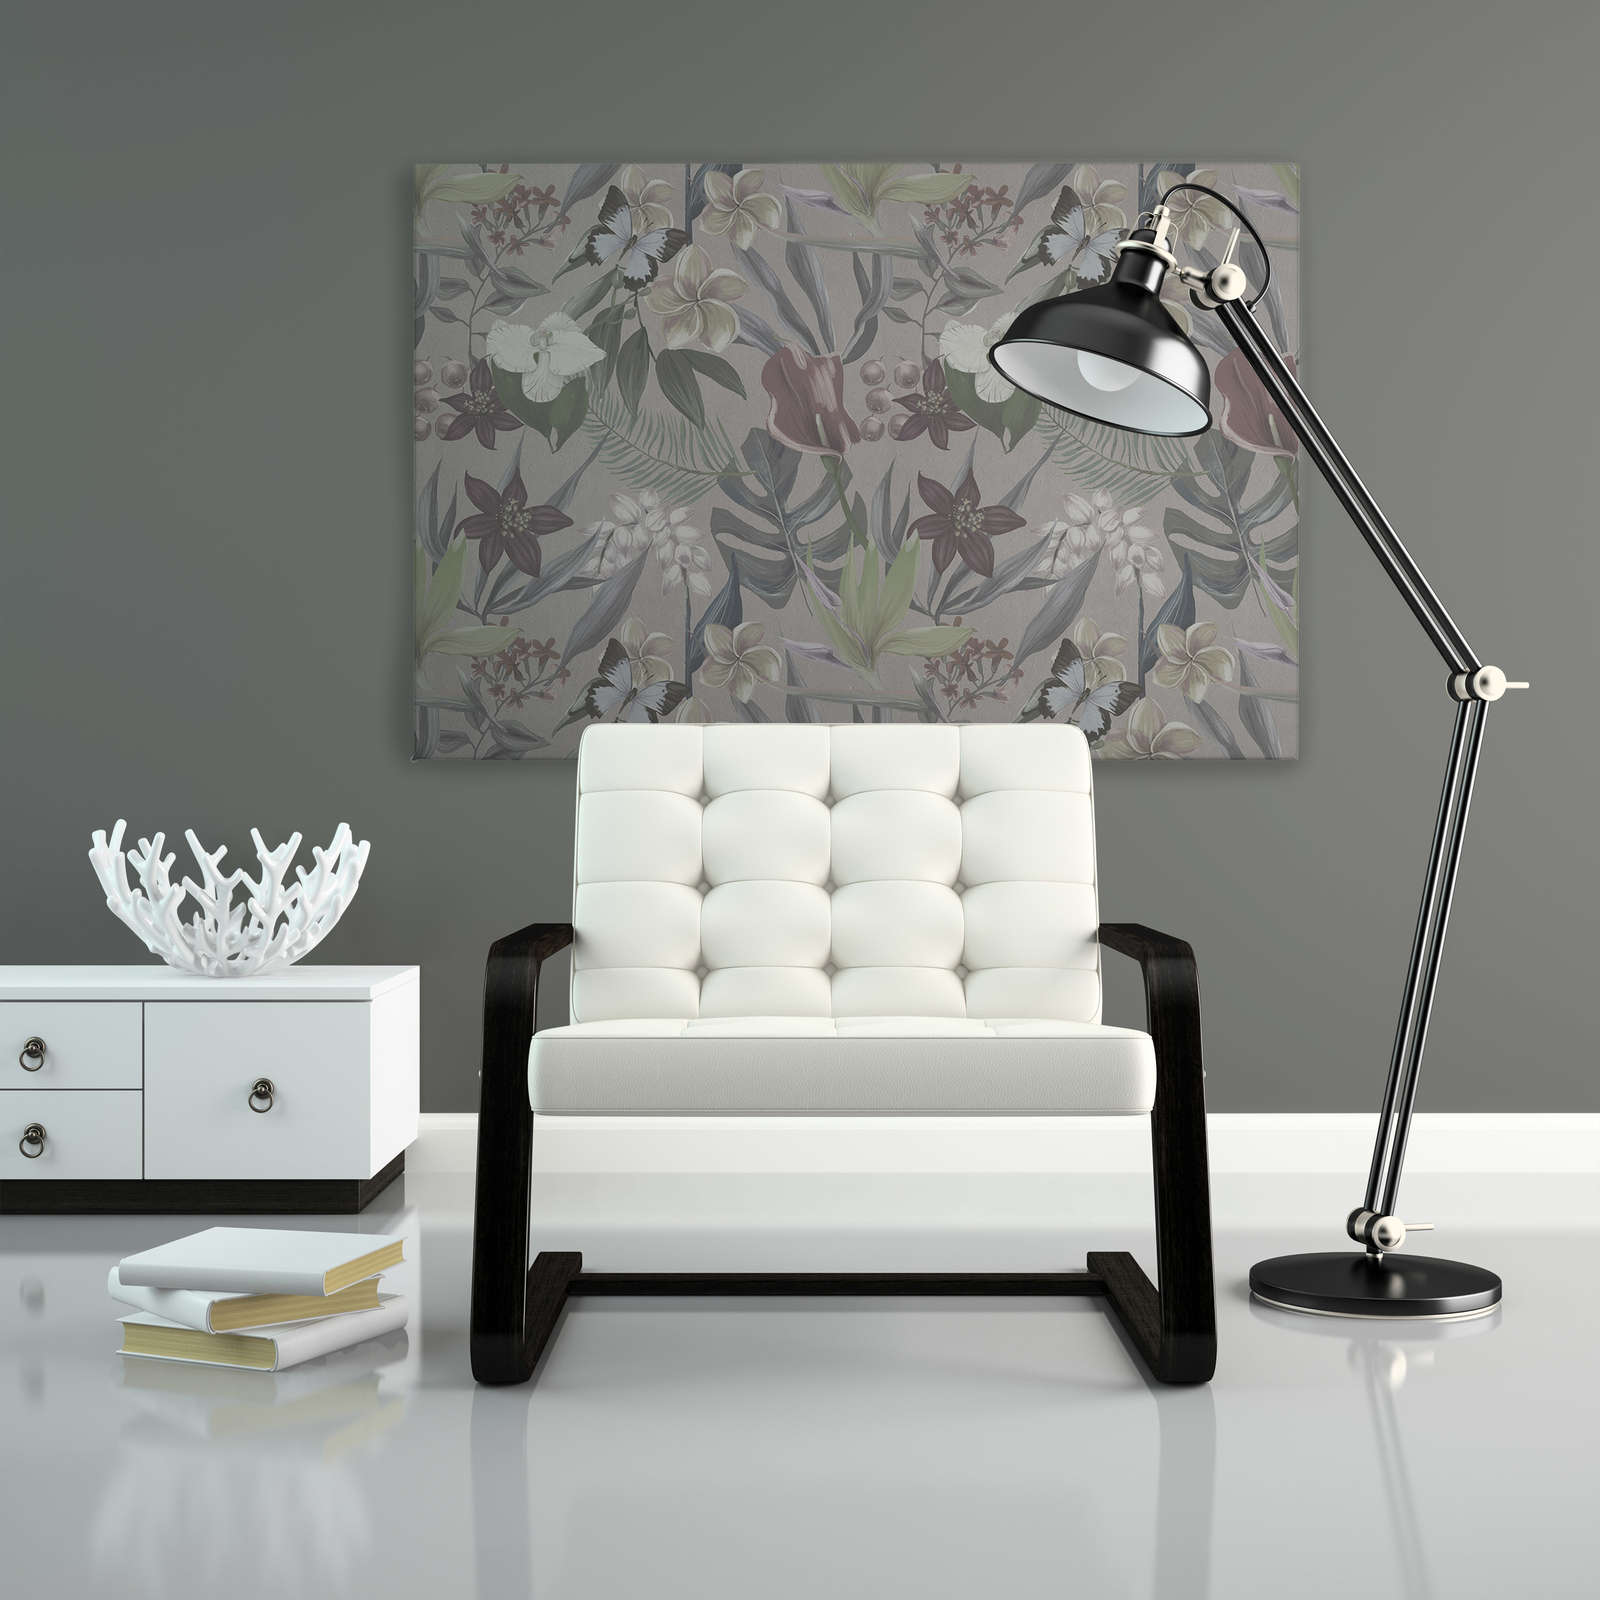             Jungle florale dessinée sur toile | gris, blanc - 1,20 m x 0,80 m
        